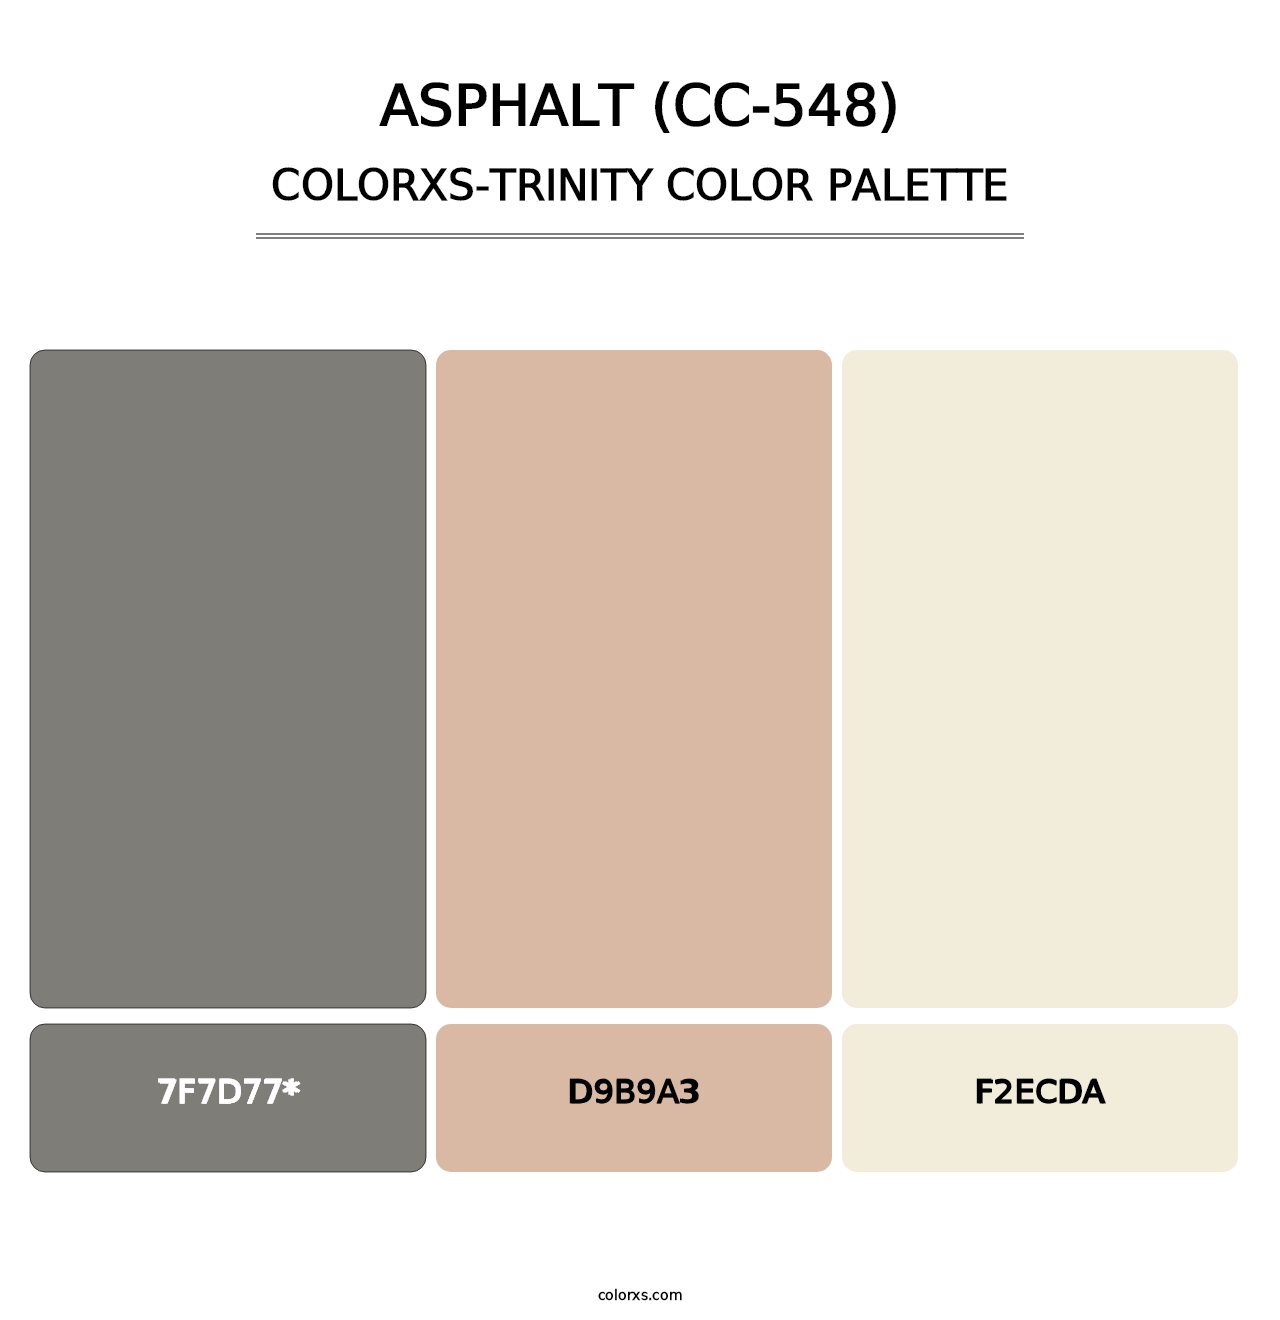 Asphalt (CC-548) - Colorxs Trinity Palette